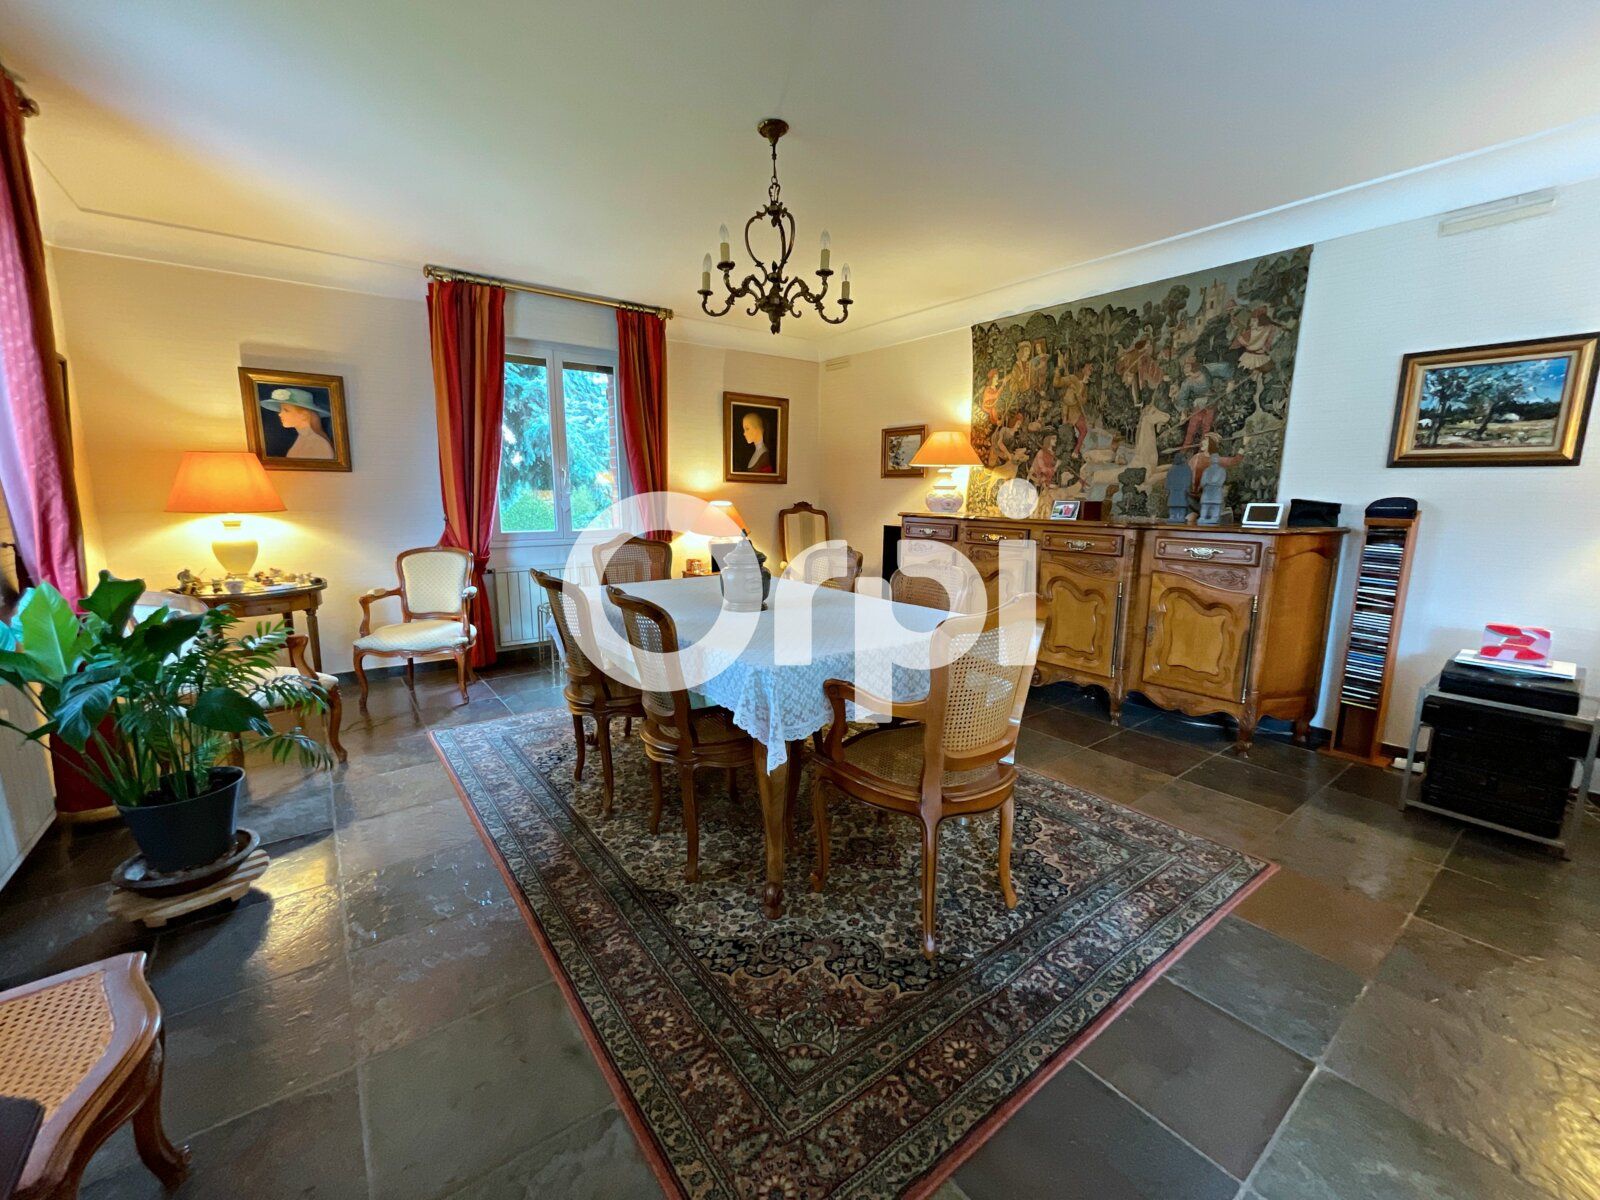 Maison à vendre 6 180m2 à Hesdigneul-lès-Béthune vignette-4